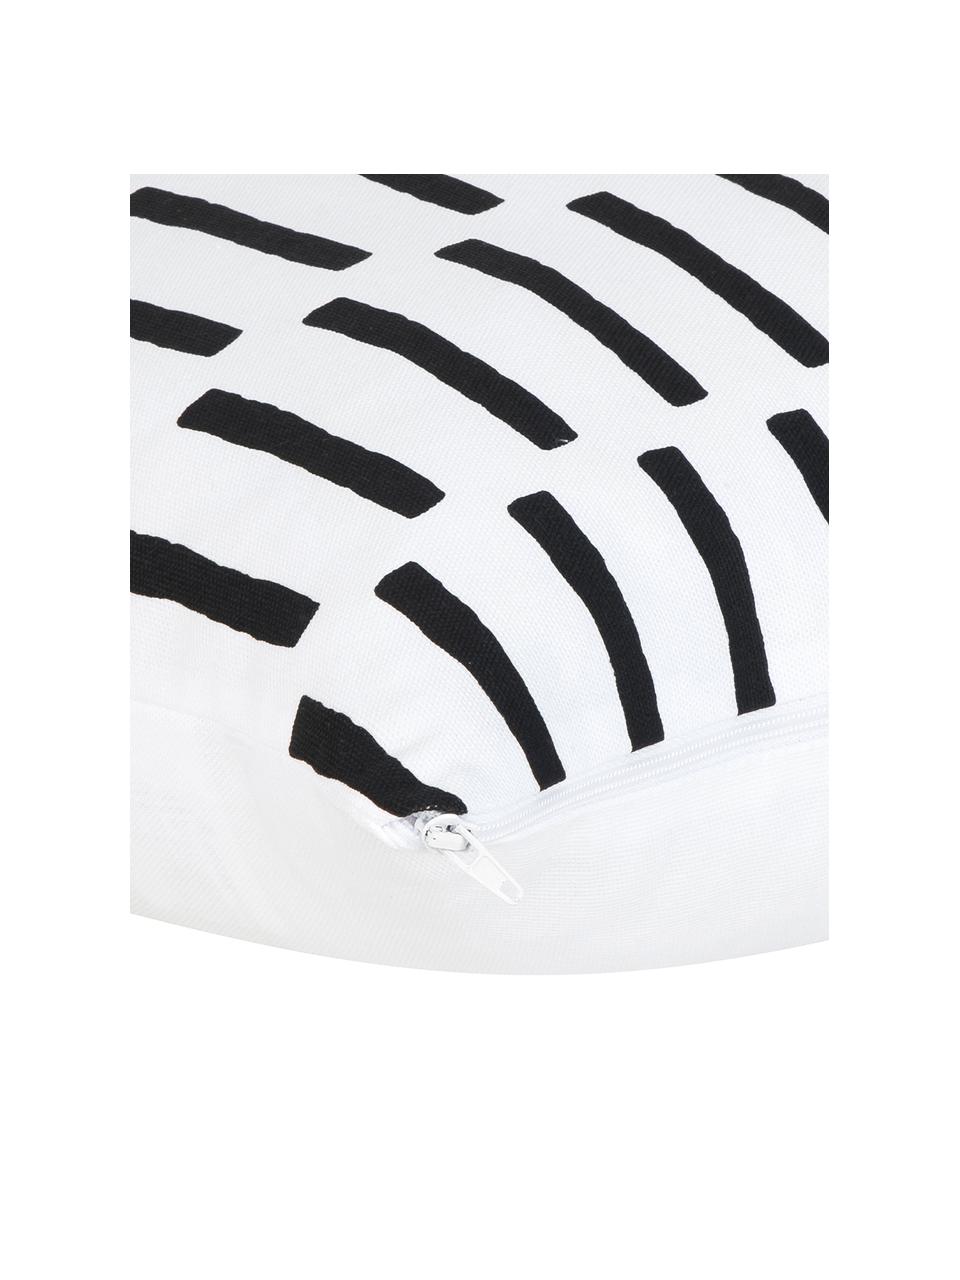 Kussenhoes Jerry in zwart/wit, Katoen, Zwart, wit, patroon, B 40 x L 40 cm